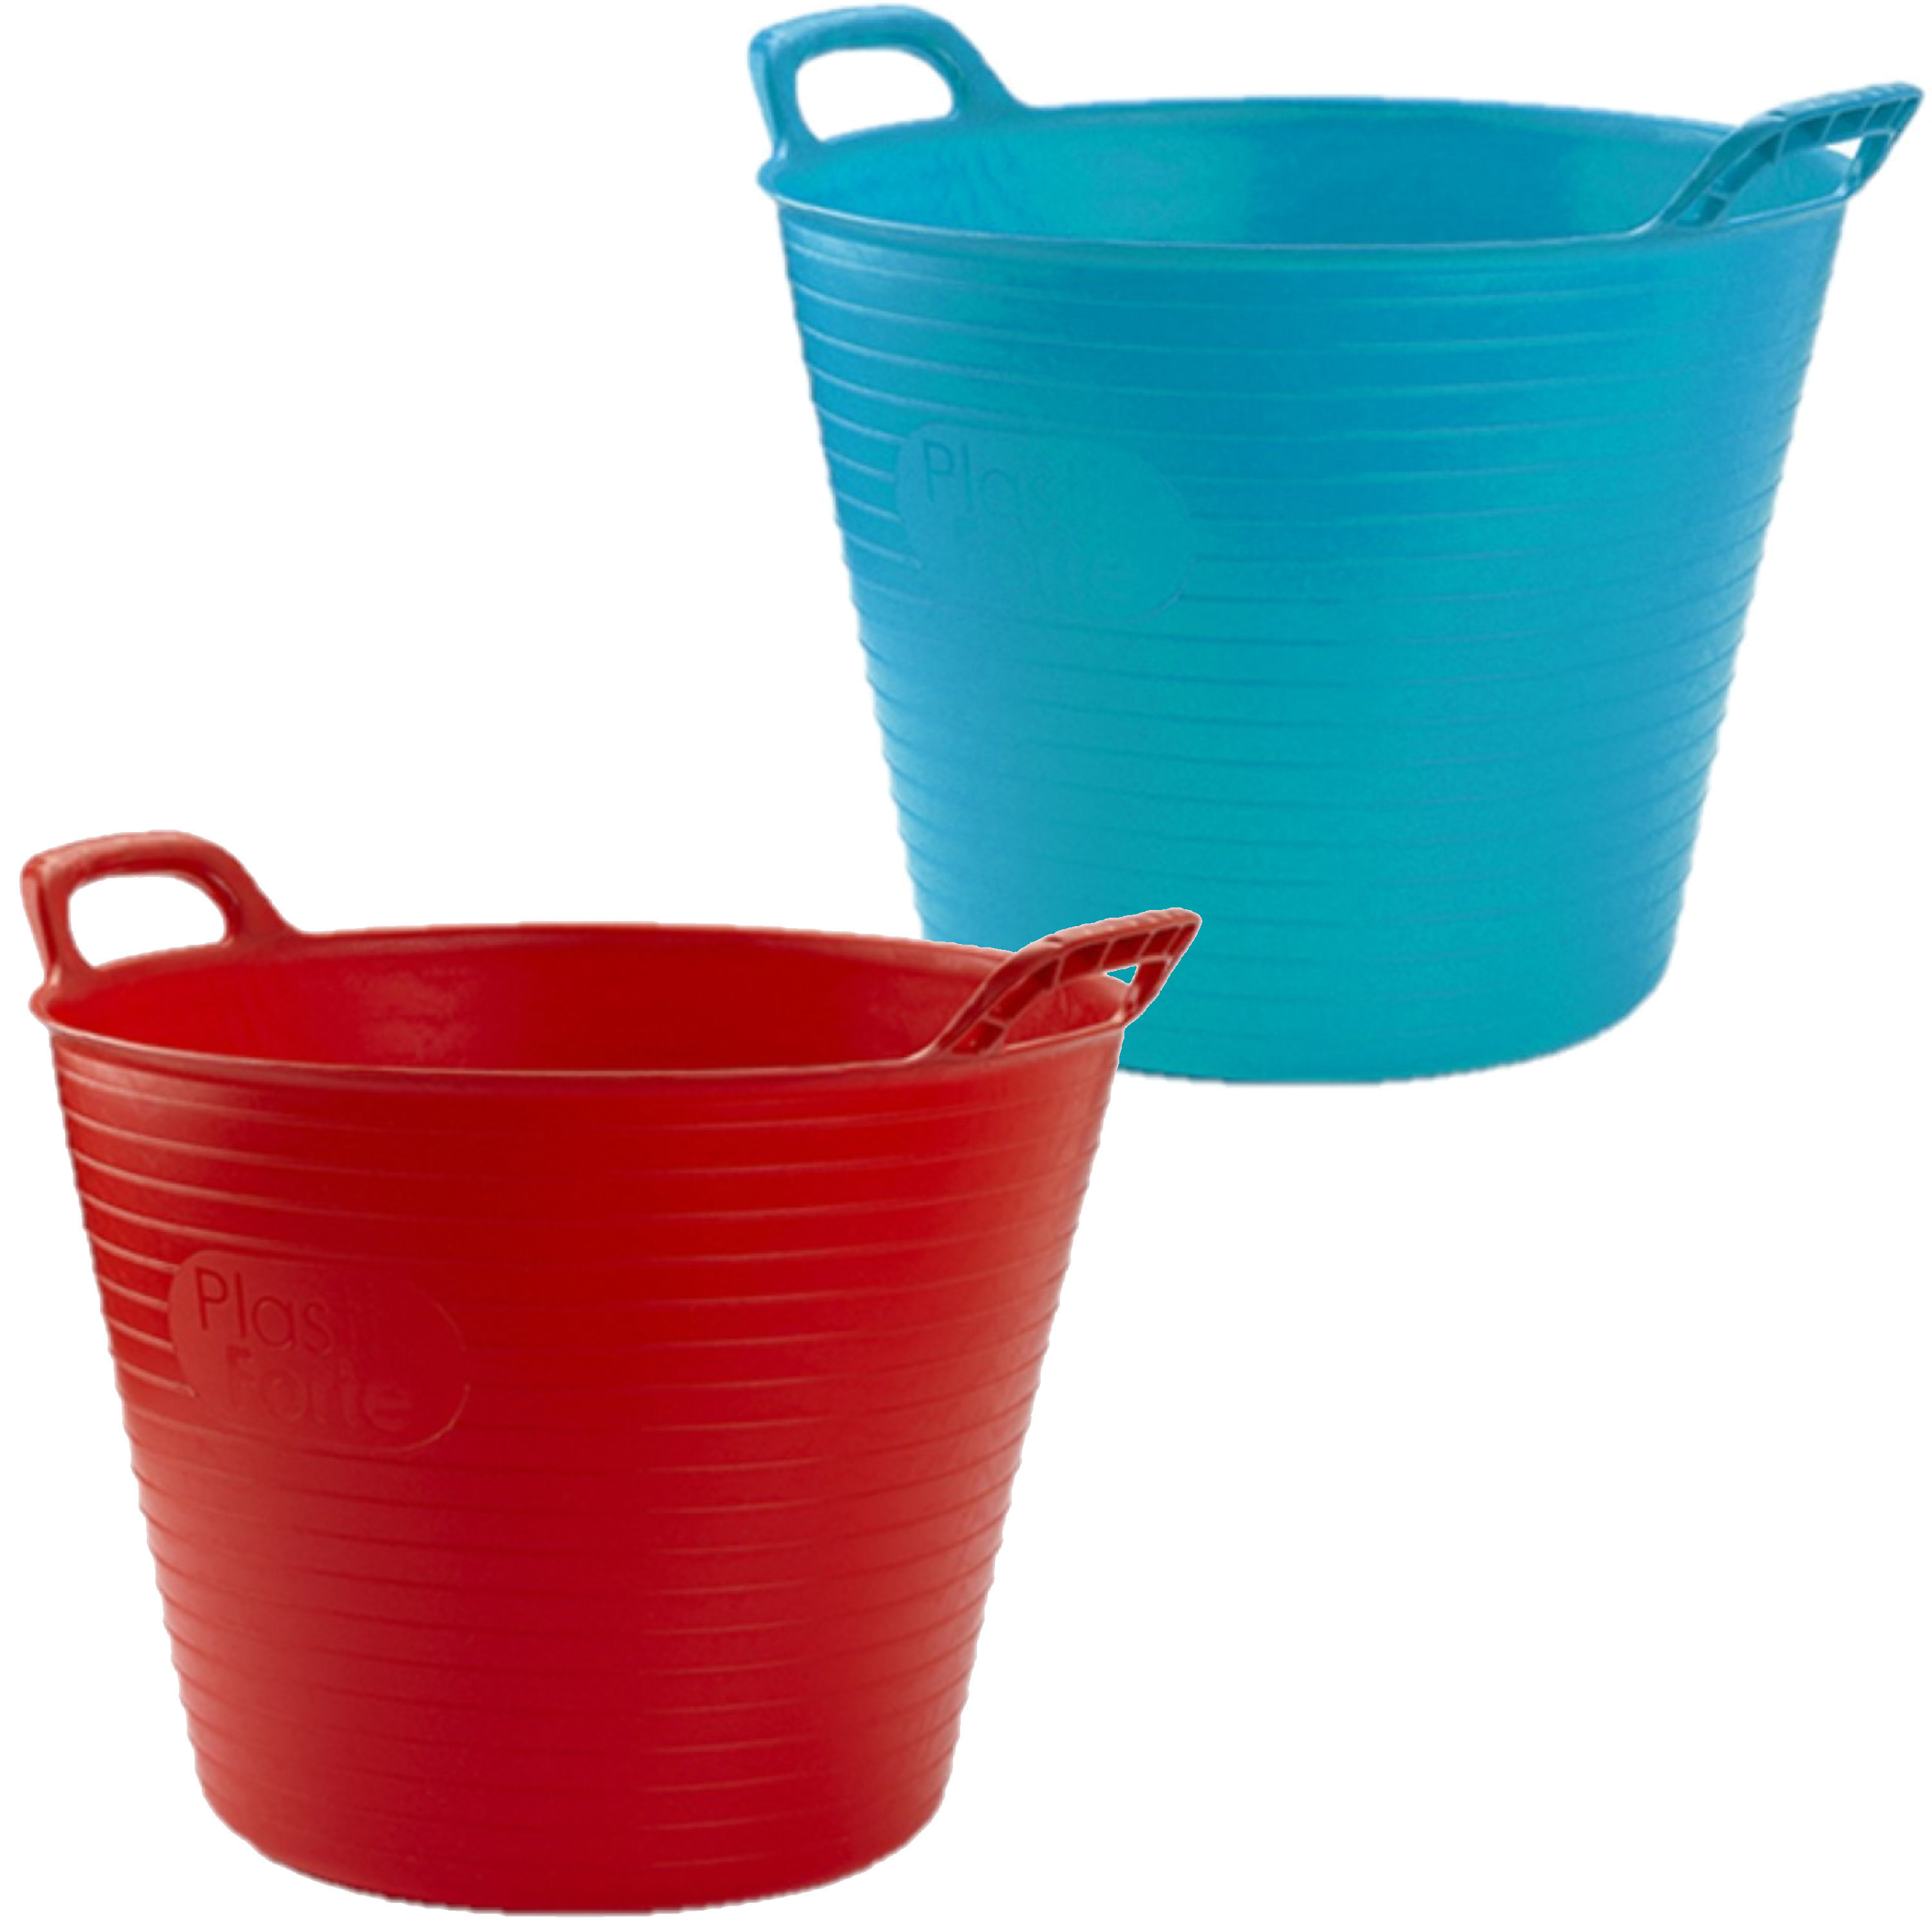 Forte Plastics Voordeelset van 2x stuks kunststof flexibele emmers/wasmanden/kuipen 25 liter in het rood/blauw -